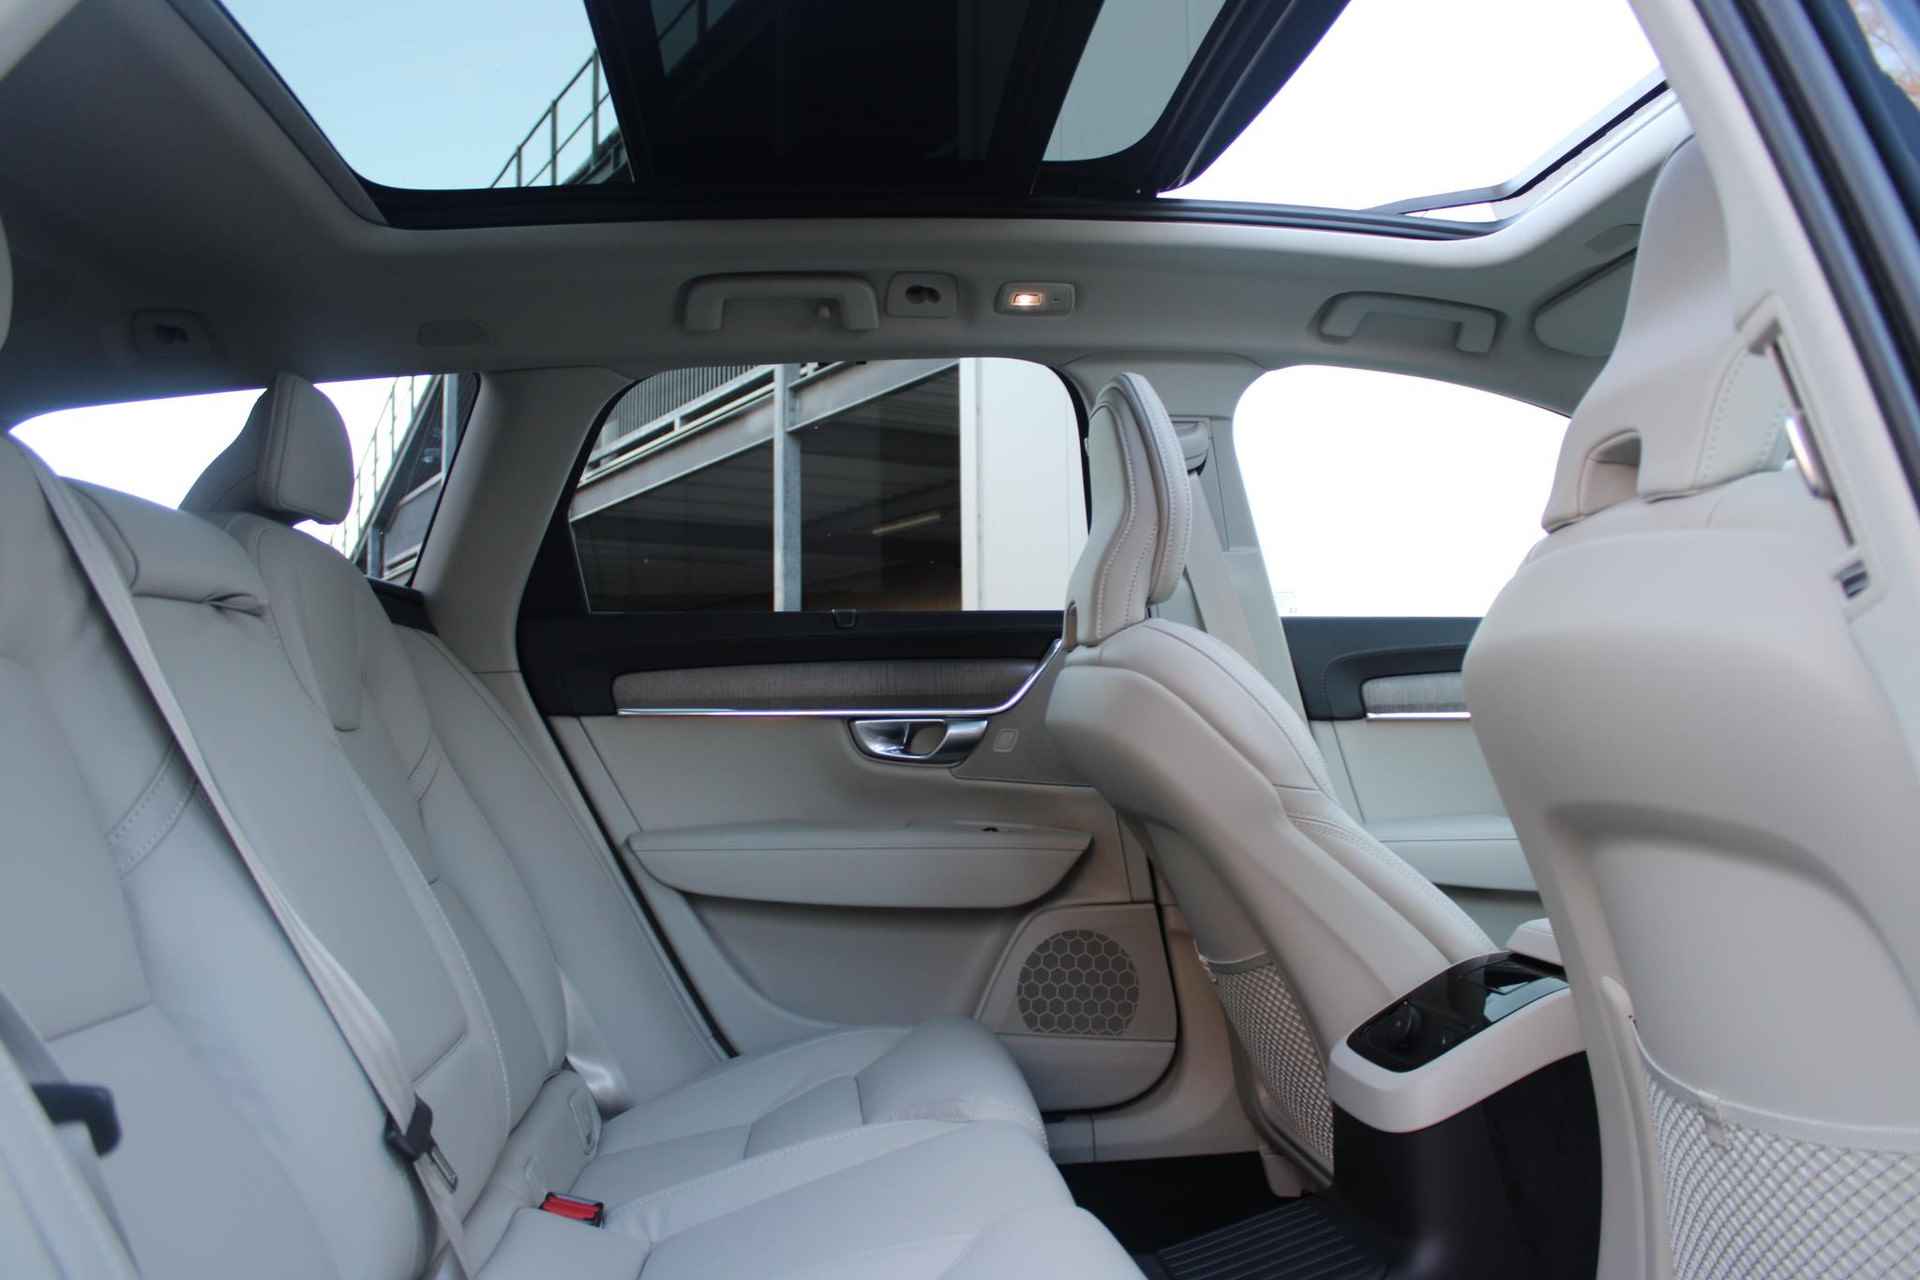 Volvo V90 AUT8 350PK T6 Recharge AWD Plus Bright, Adaptieve Cruise Control met Pilot Assist, Luchtvering, Elektrisch bedienbaar panoramisch schuif-/kanteldak, Premium audio by Harman Kardon, Elektrische voorstoelen met ventilatie, Verwarmbare voorstoelen + stuurwiel,  Park Assist voor + achter, 360 Parkeercamera, Alarmklasse III, Blind Spot Information System, Keyless Entry, Apple CarPlay, 20'' Lichtmetalen wielen - 6/50